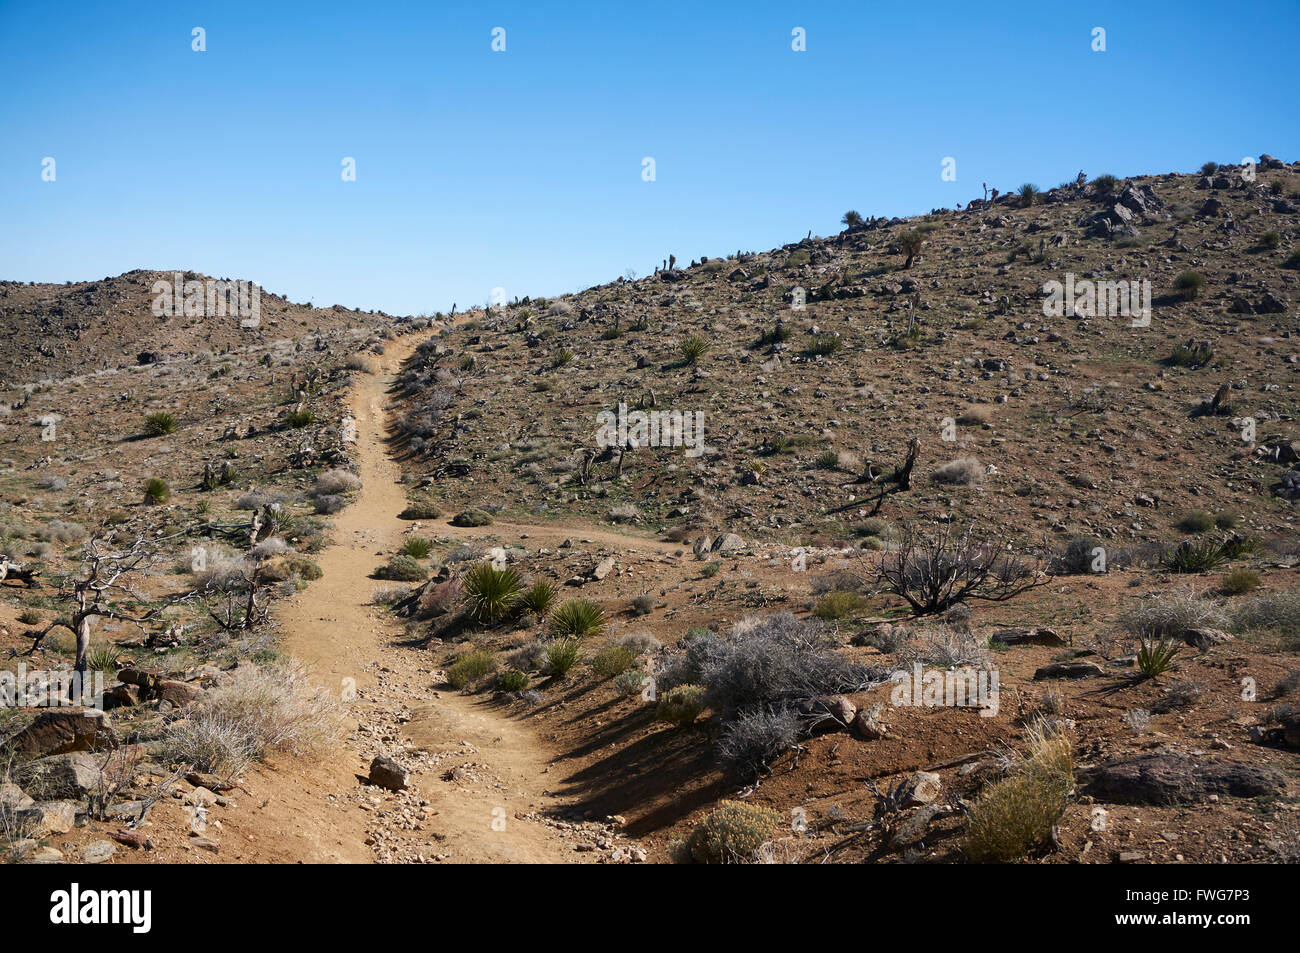 Sentier de randonnée du désert, le parc national Joshua Tree, Twentynine Palms, California, USA Banque D'Images